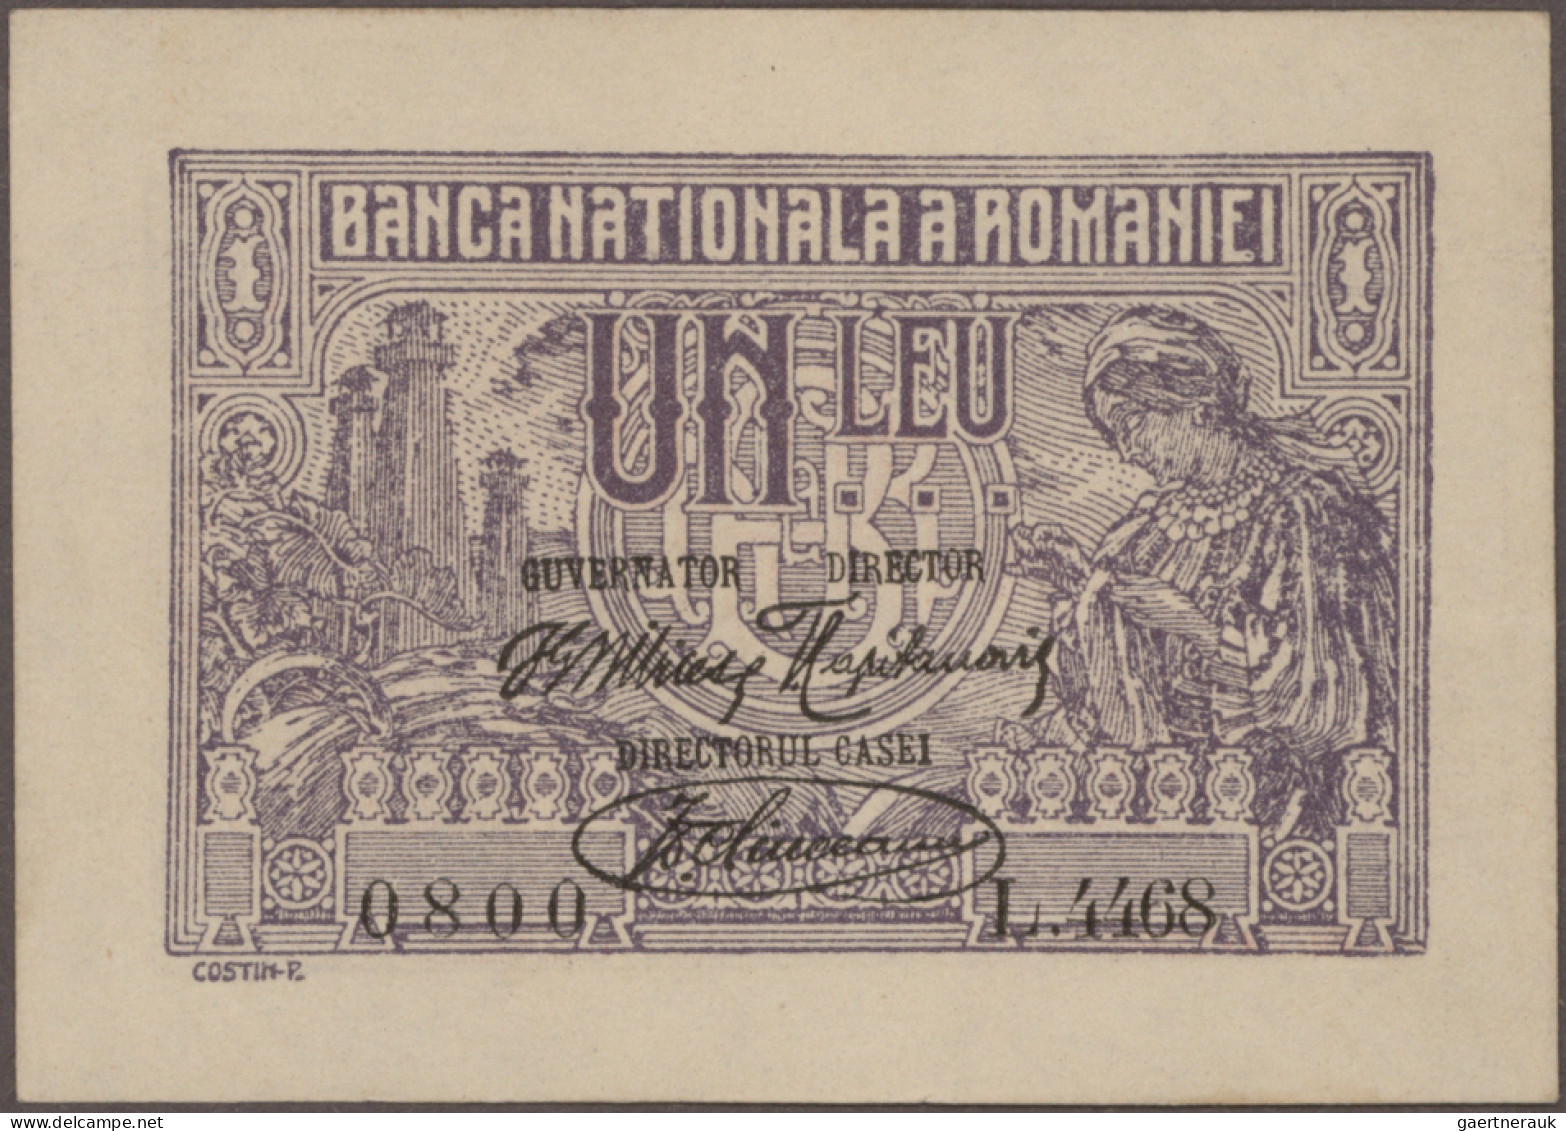 Romania: Banca Naţională a României and Romanian Treasury – BUKOVINA, set with 4